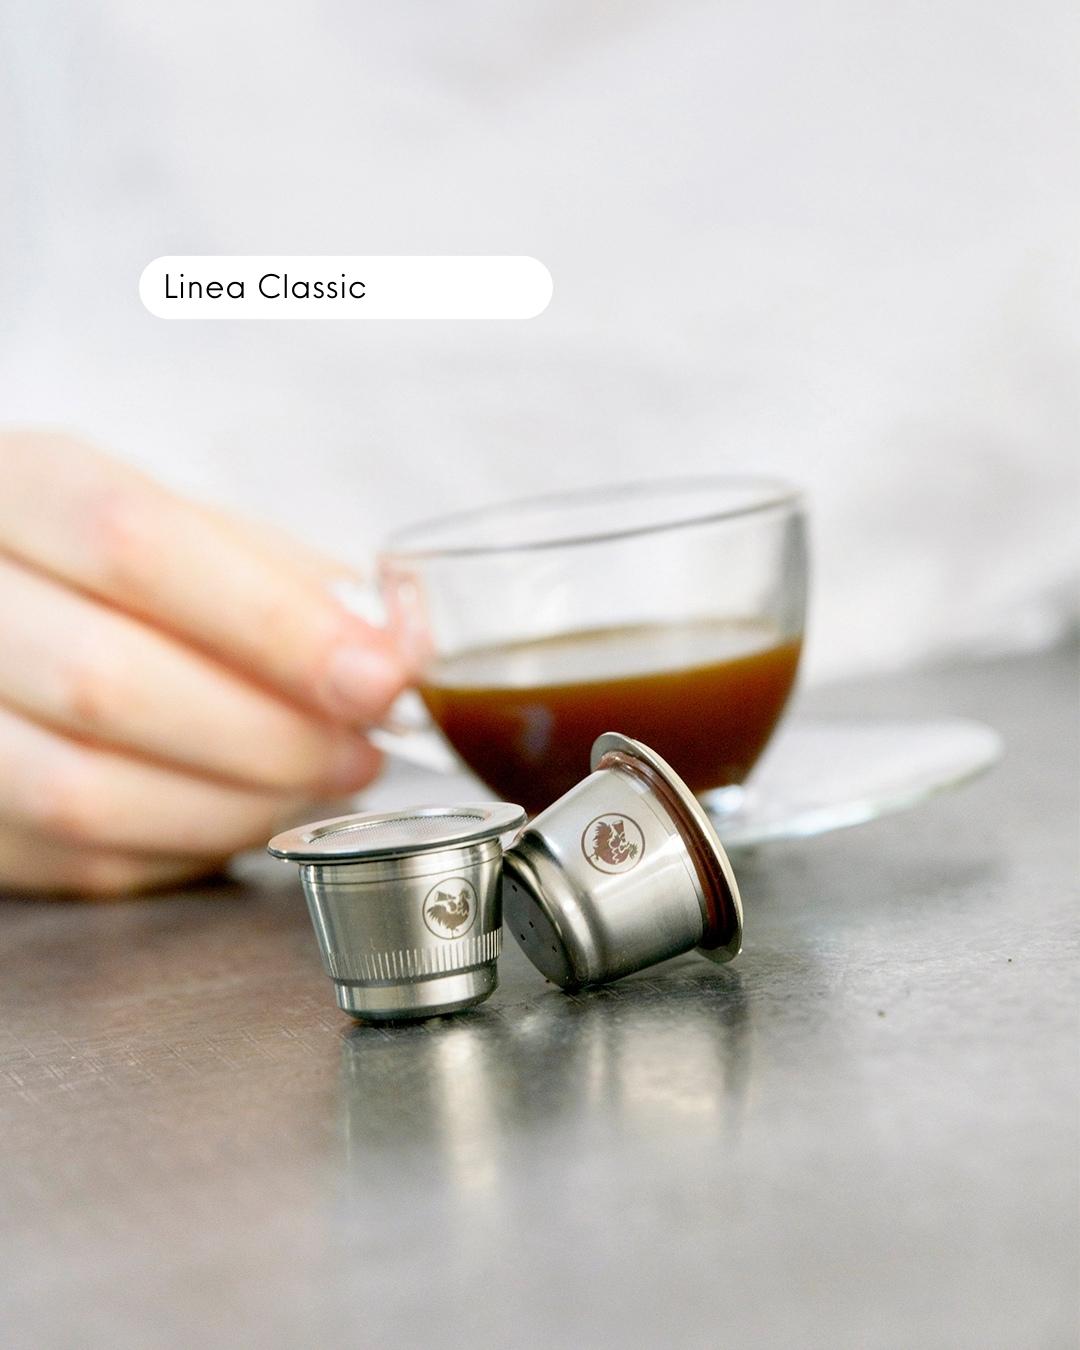 Capsula riutilizzabile in acciaio inox per macchine Nespresso Cialde Caffe